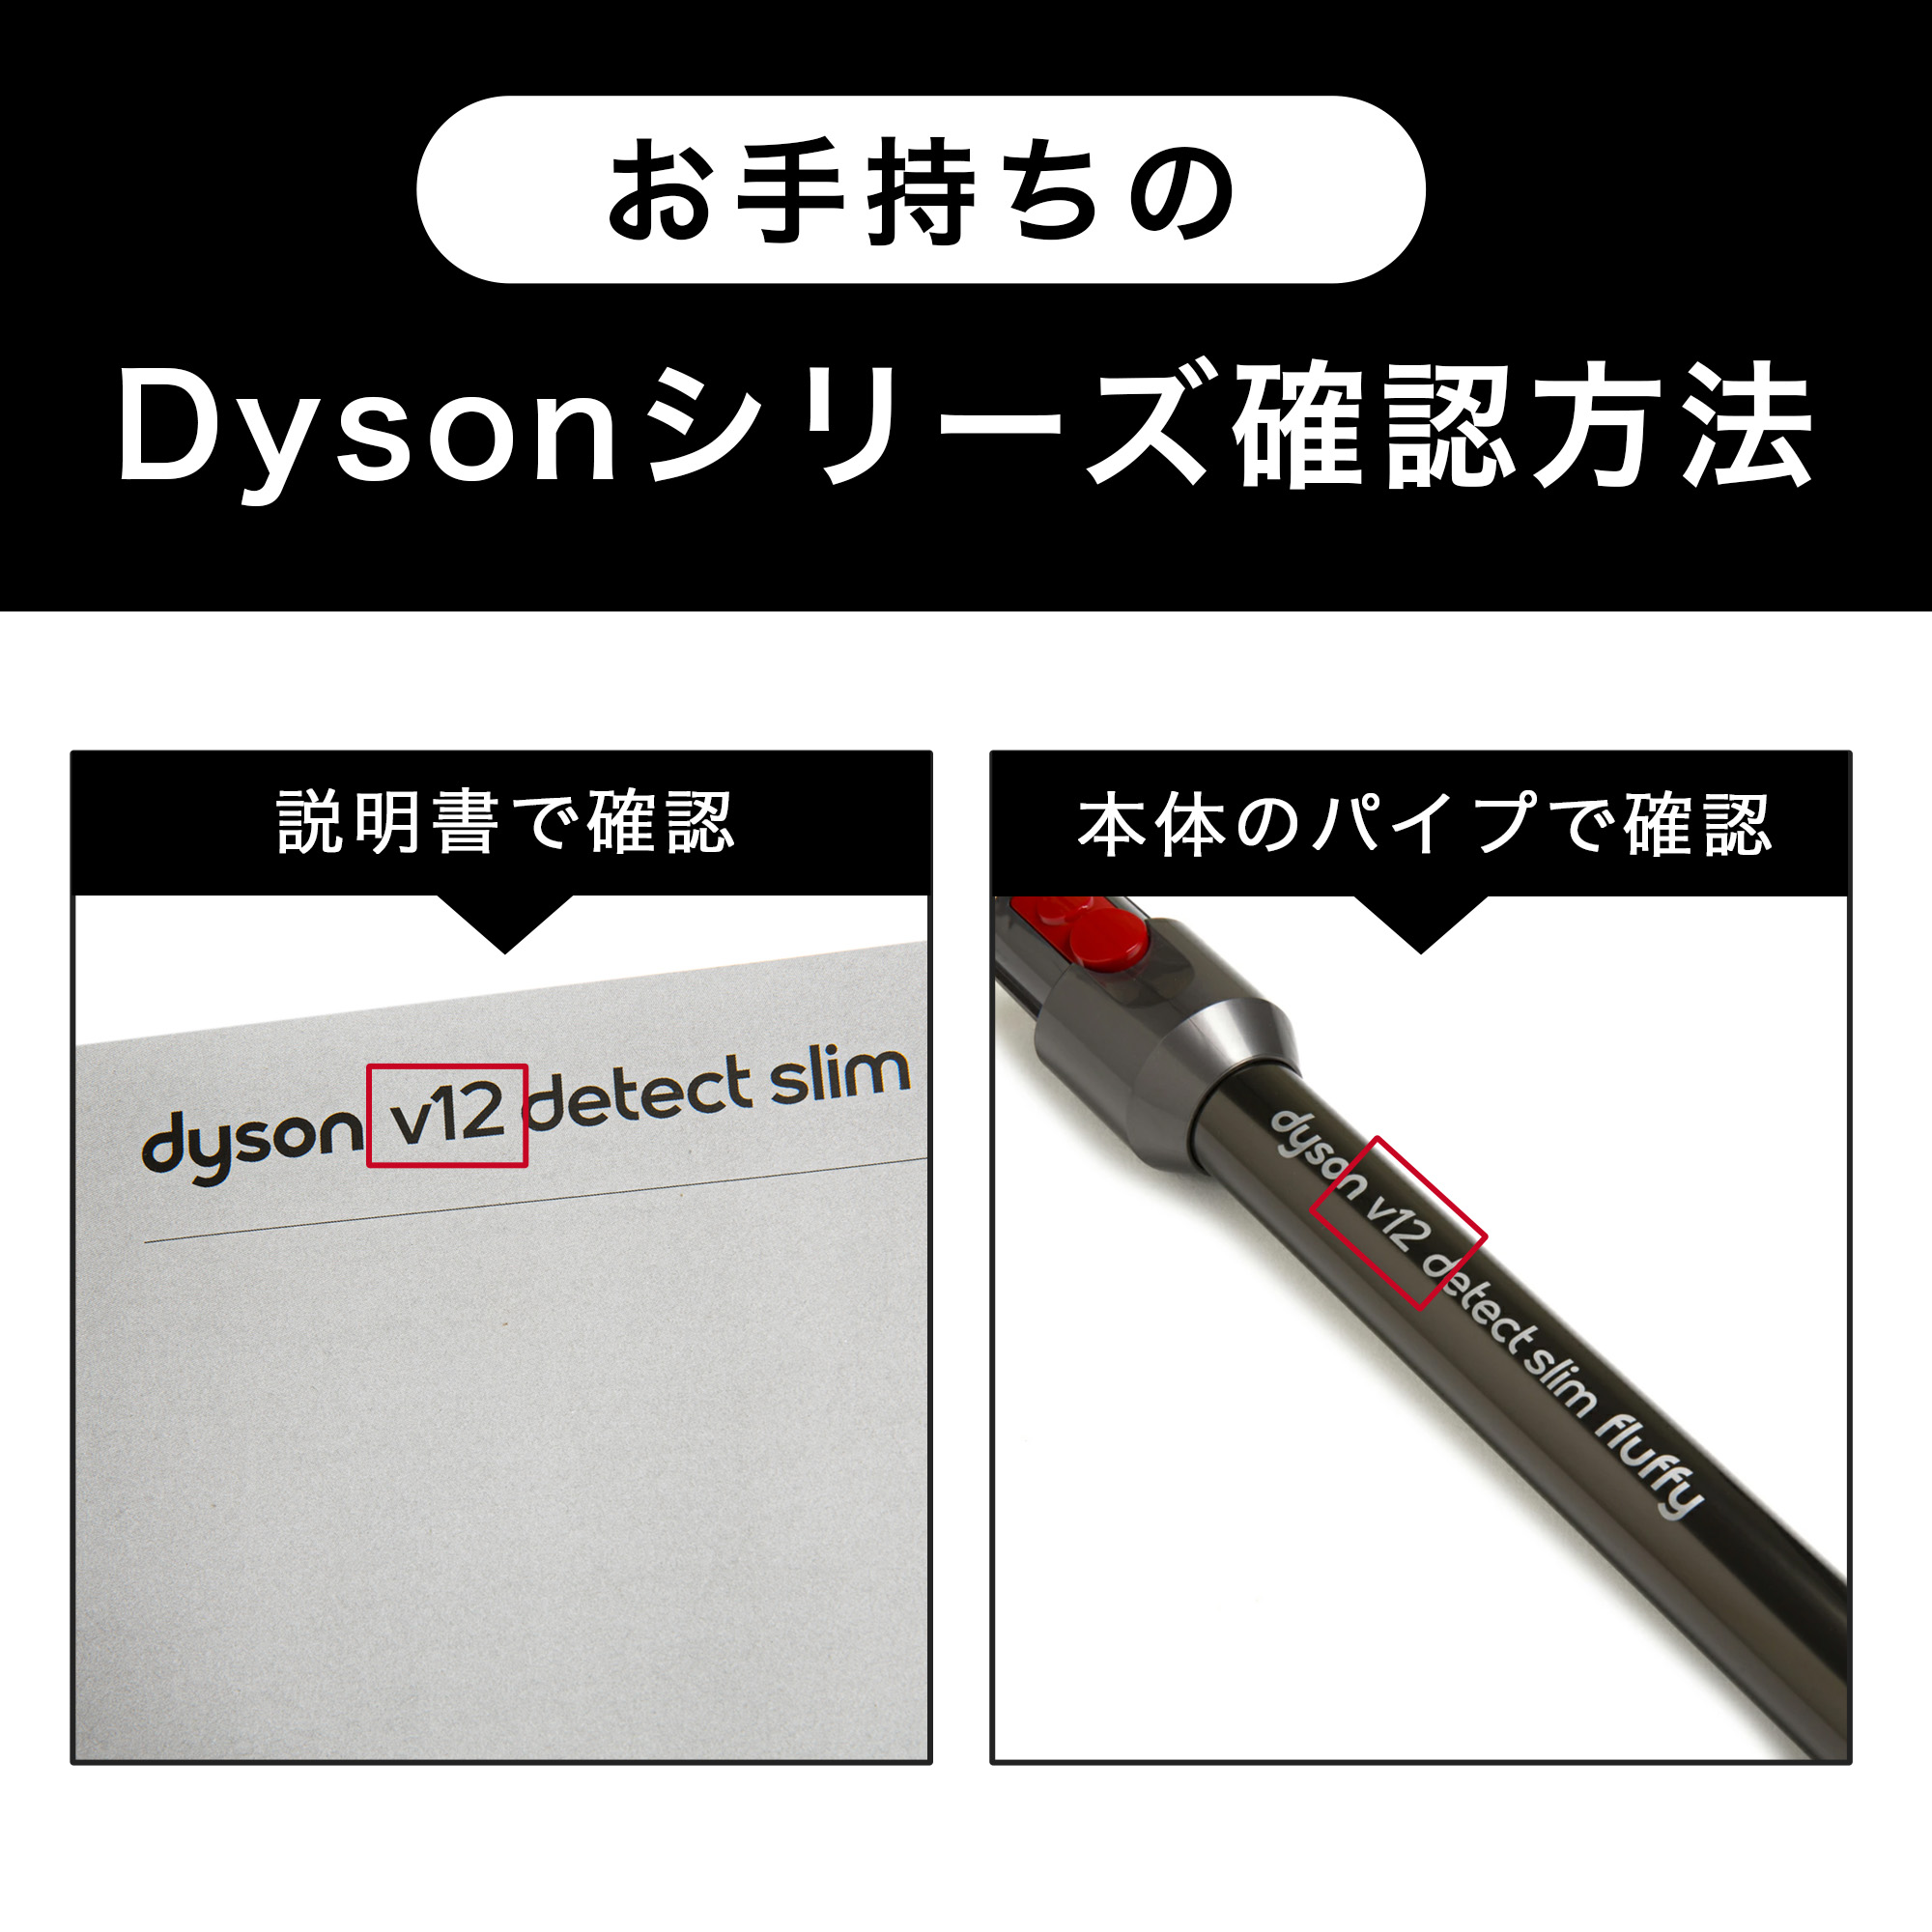 Dyson ダイソン 掃除機 純正 パーツ 返品OK ダイレクトドライブクリーナーヘッド V10 V11 適合 SV12 SV14 モデル 部品 交換